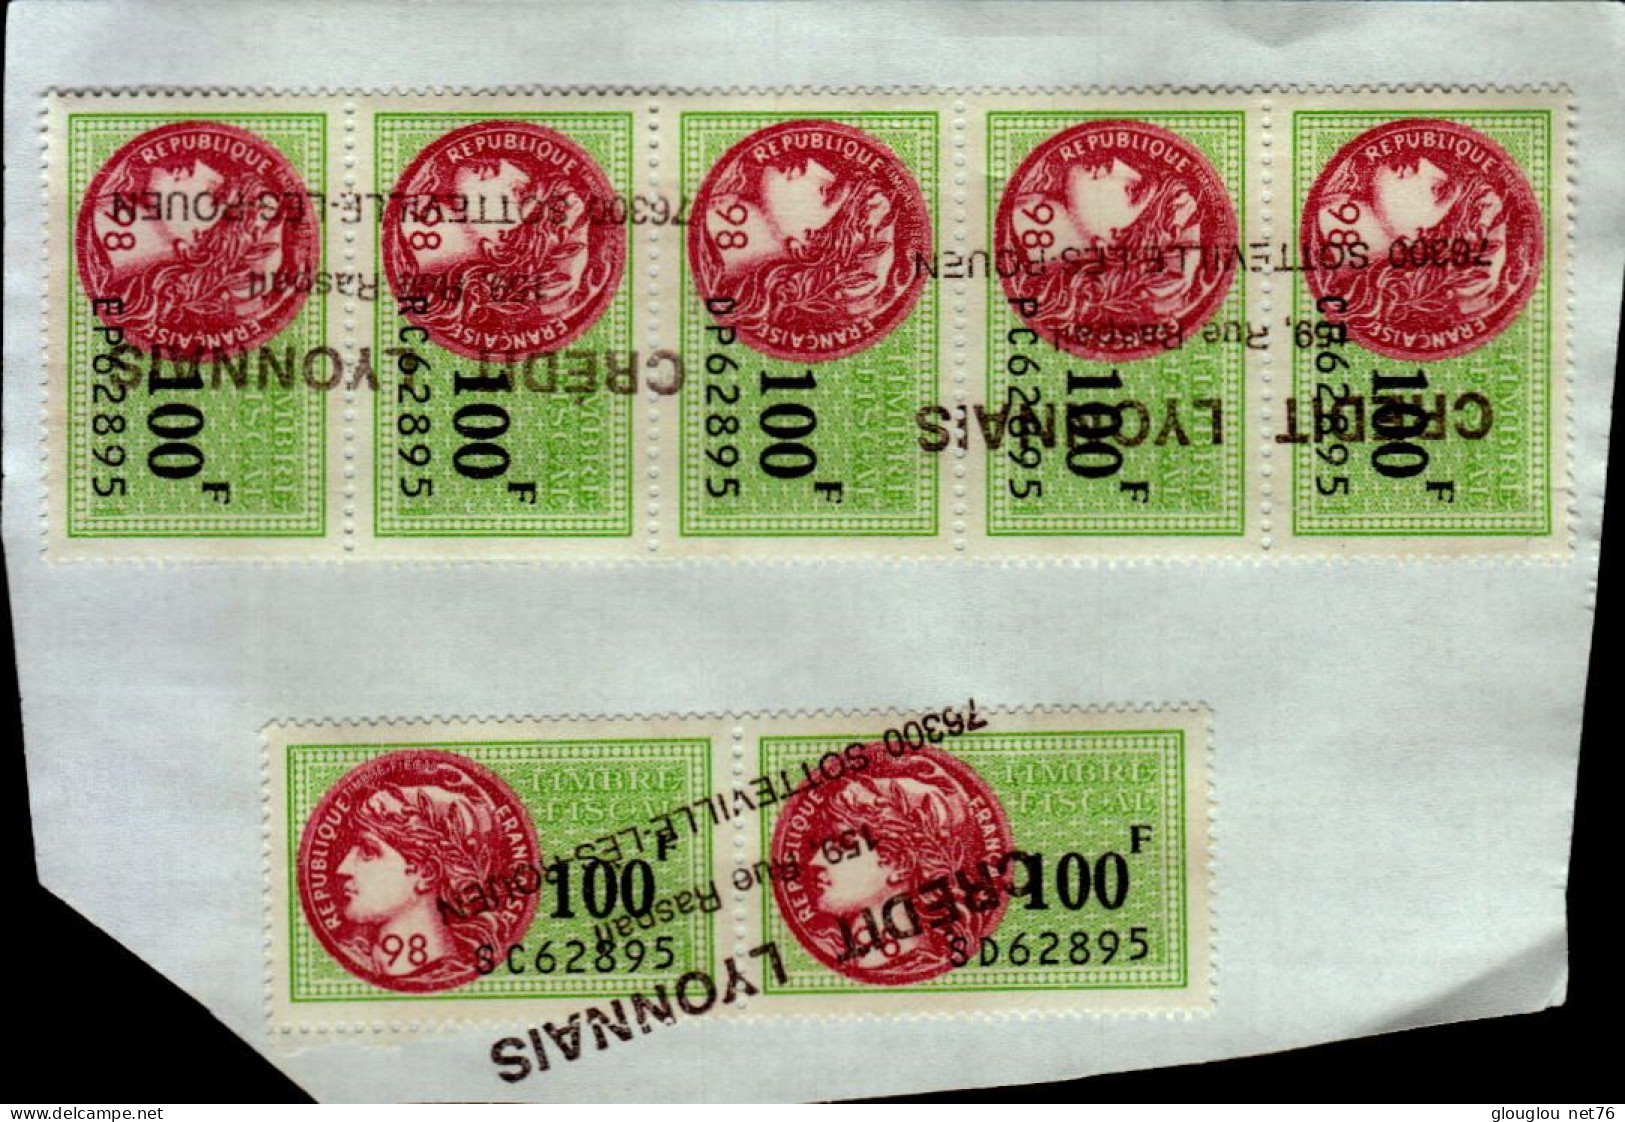 7 TIMBRES FISCAUX A 100F  ..COLLES SUR UNE FEUILLE - Stamps